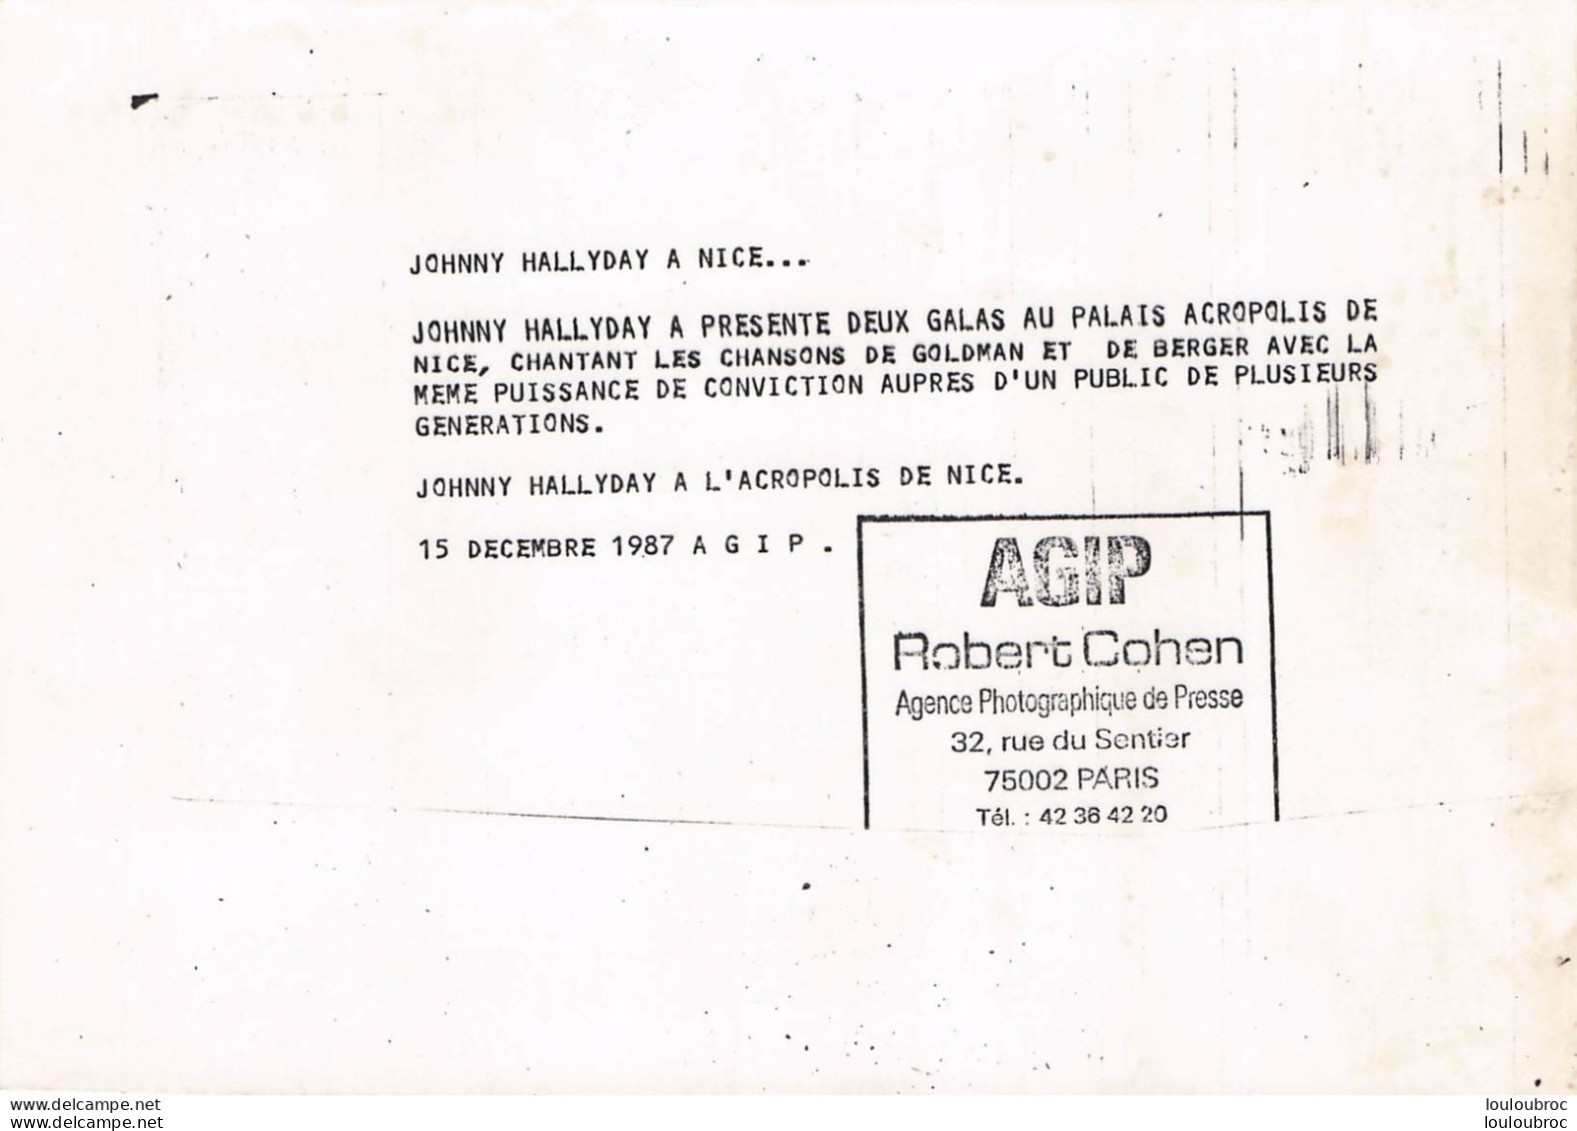 JOHNNY HALLYDAY 1987 A L'ACROPOLIS DE NICE CHANTANT GOLDMAN ET BERGER  PHOTO DE PRESSE ORIGINALE 21X15CM - Famous People